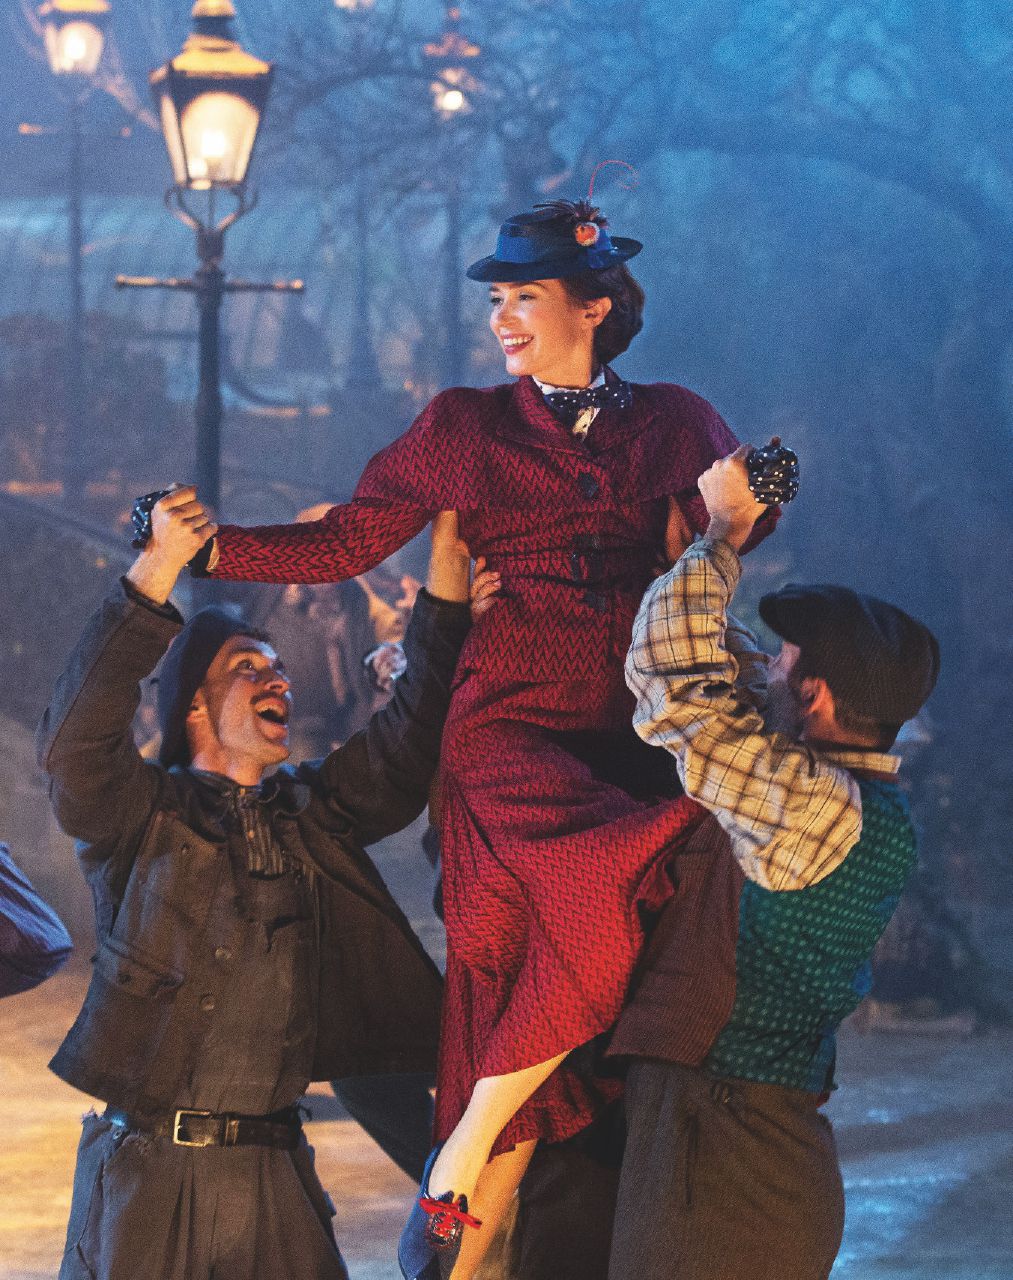 Copertina di “Praticamente perfetta”: Mary Poppins non si imita